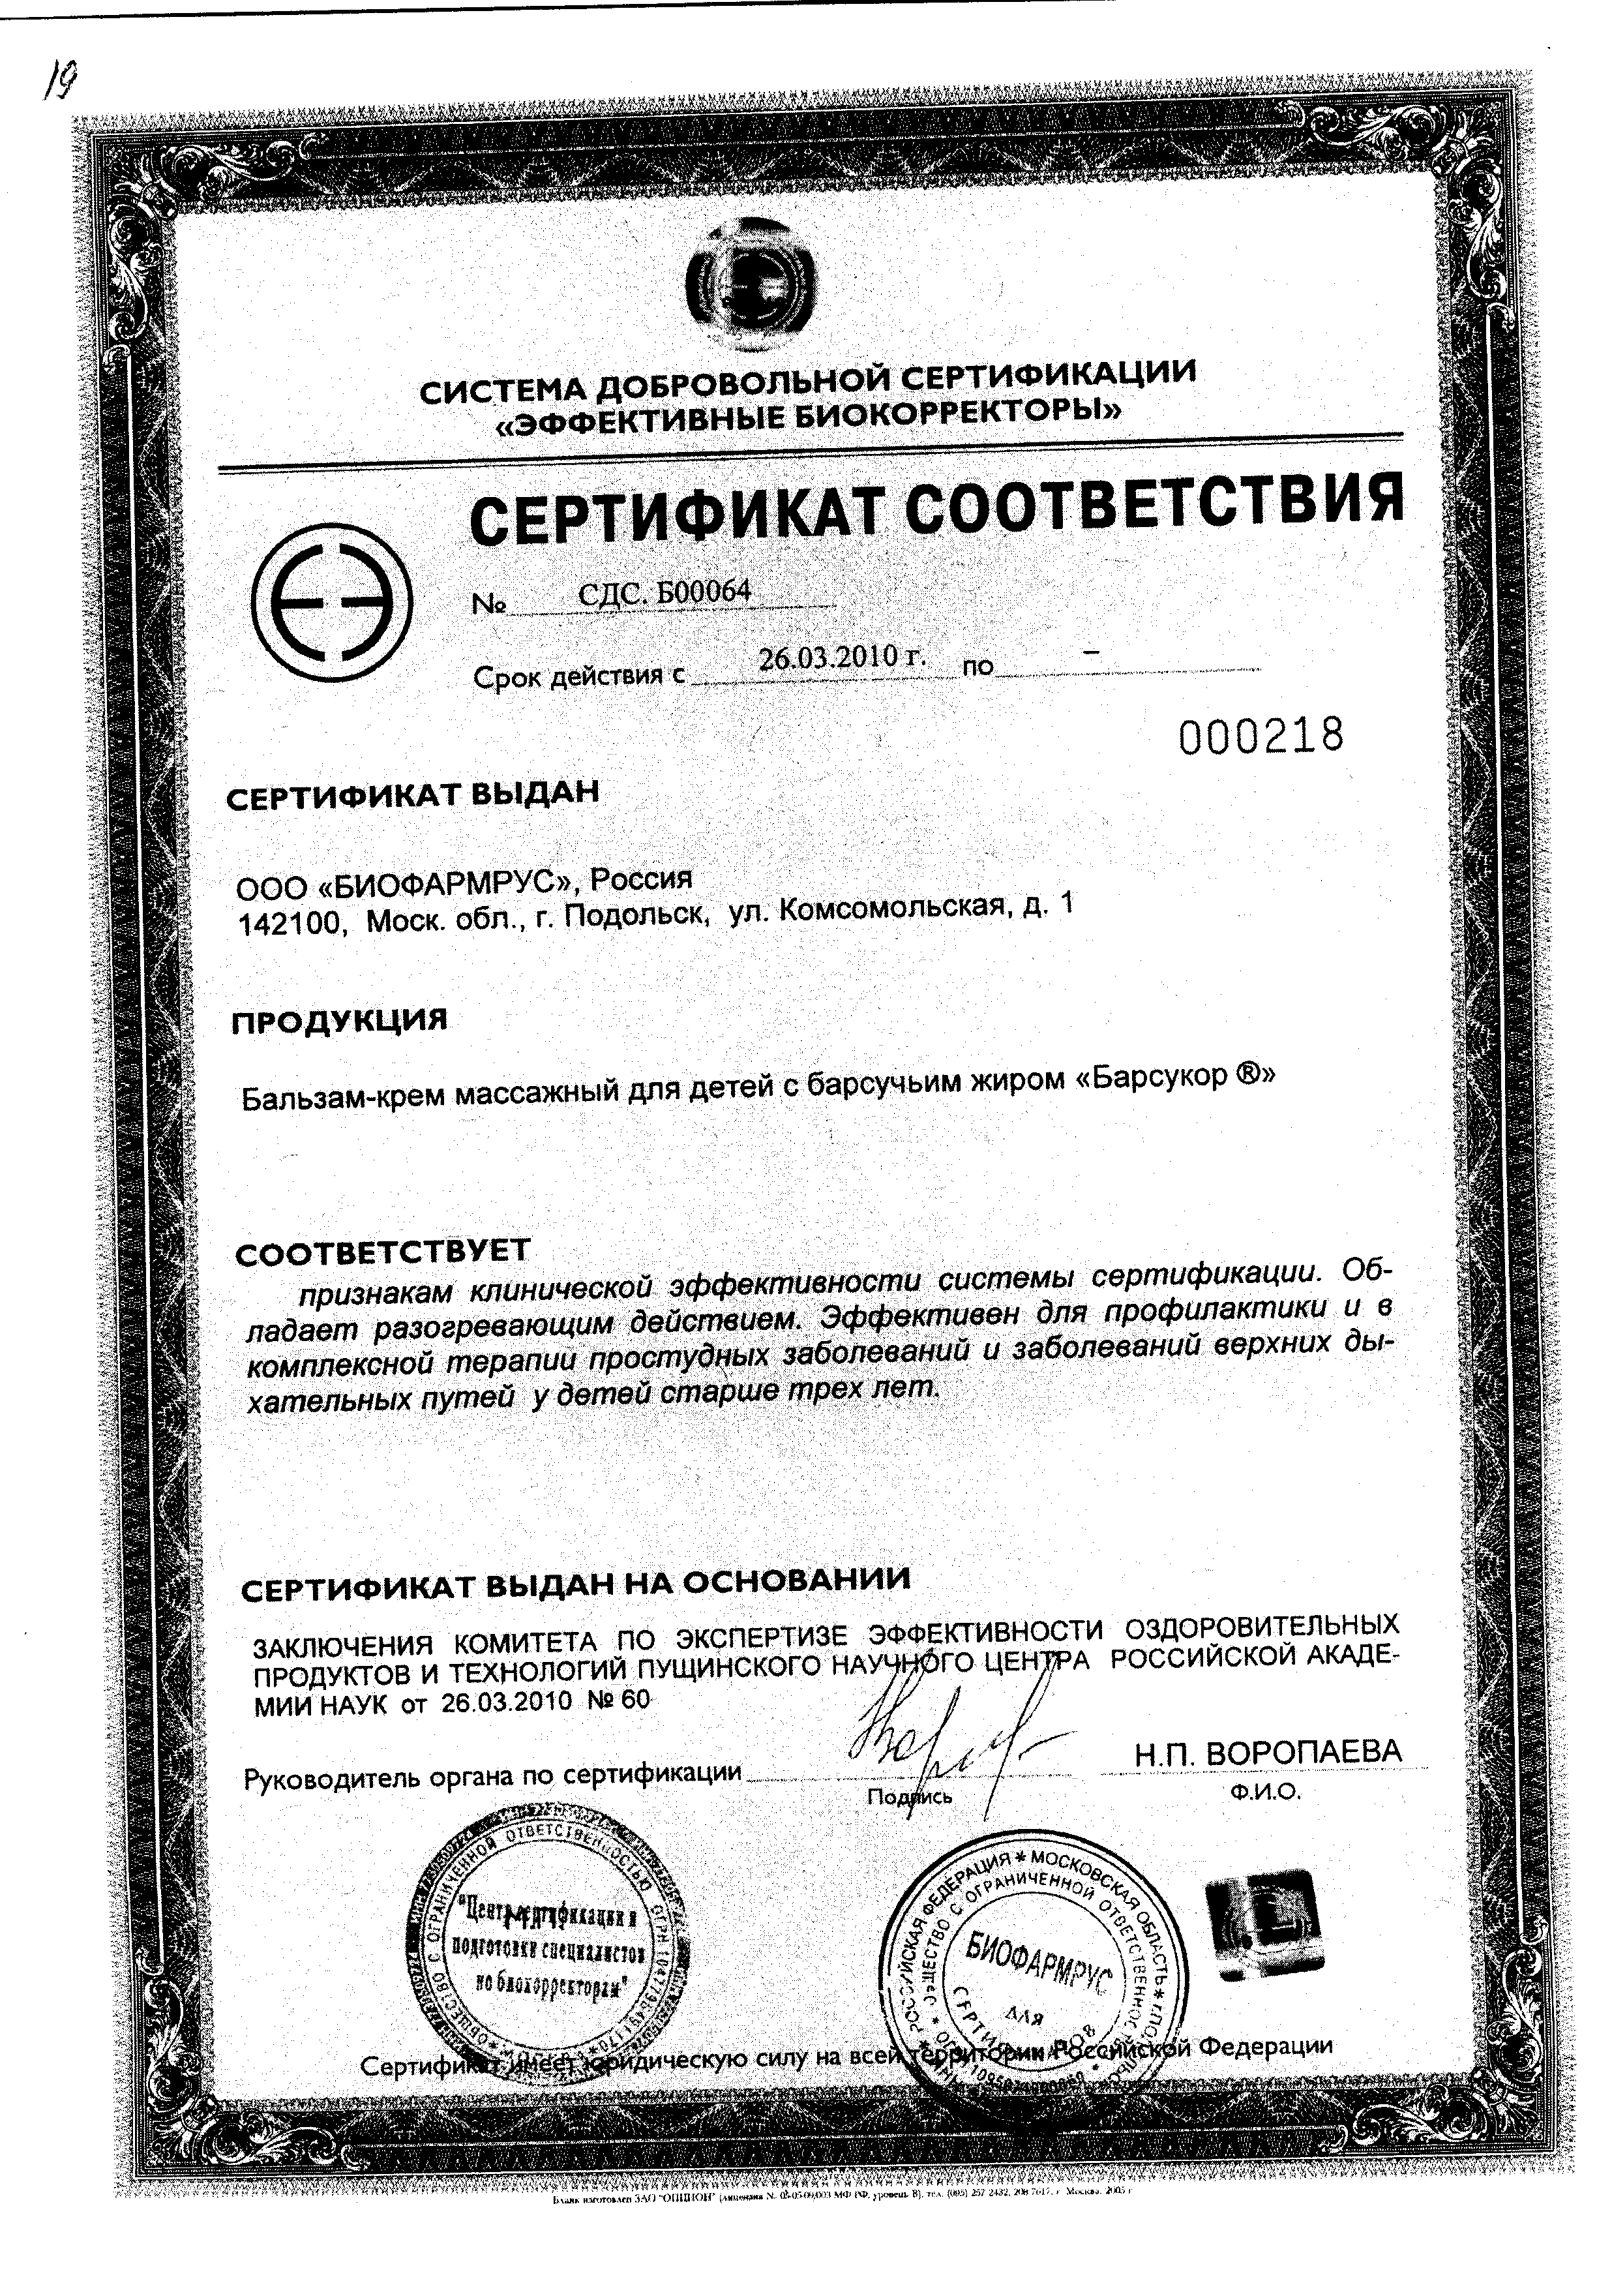 Барсукор бальзам-крем с барсучьим жиром сертификат